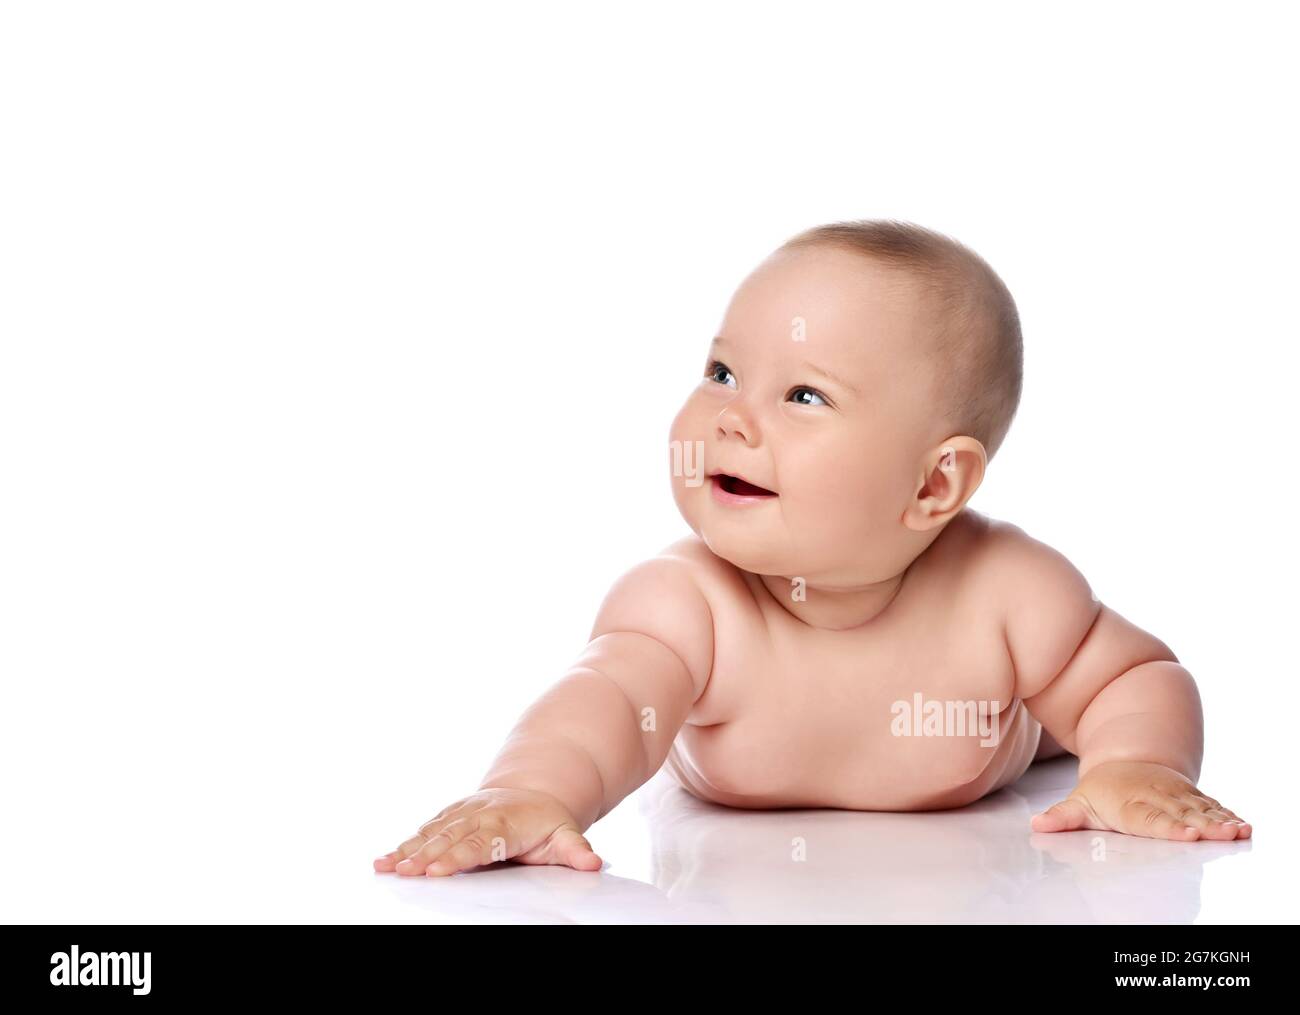 Glücklich lachend, kichernd Kleinkind Baby Mädchen Kind in Windel liegt auf ihrem Bauch mit ausgestrecktem Arm Stockfoto